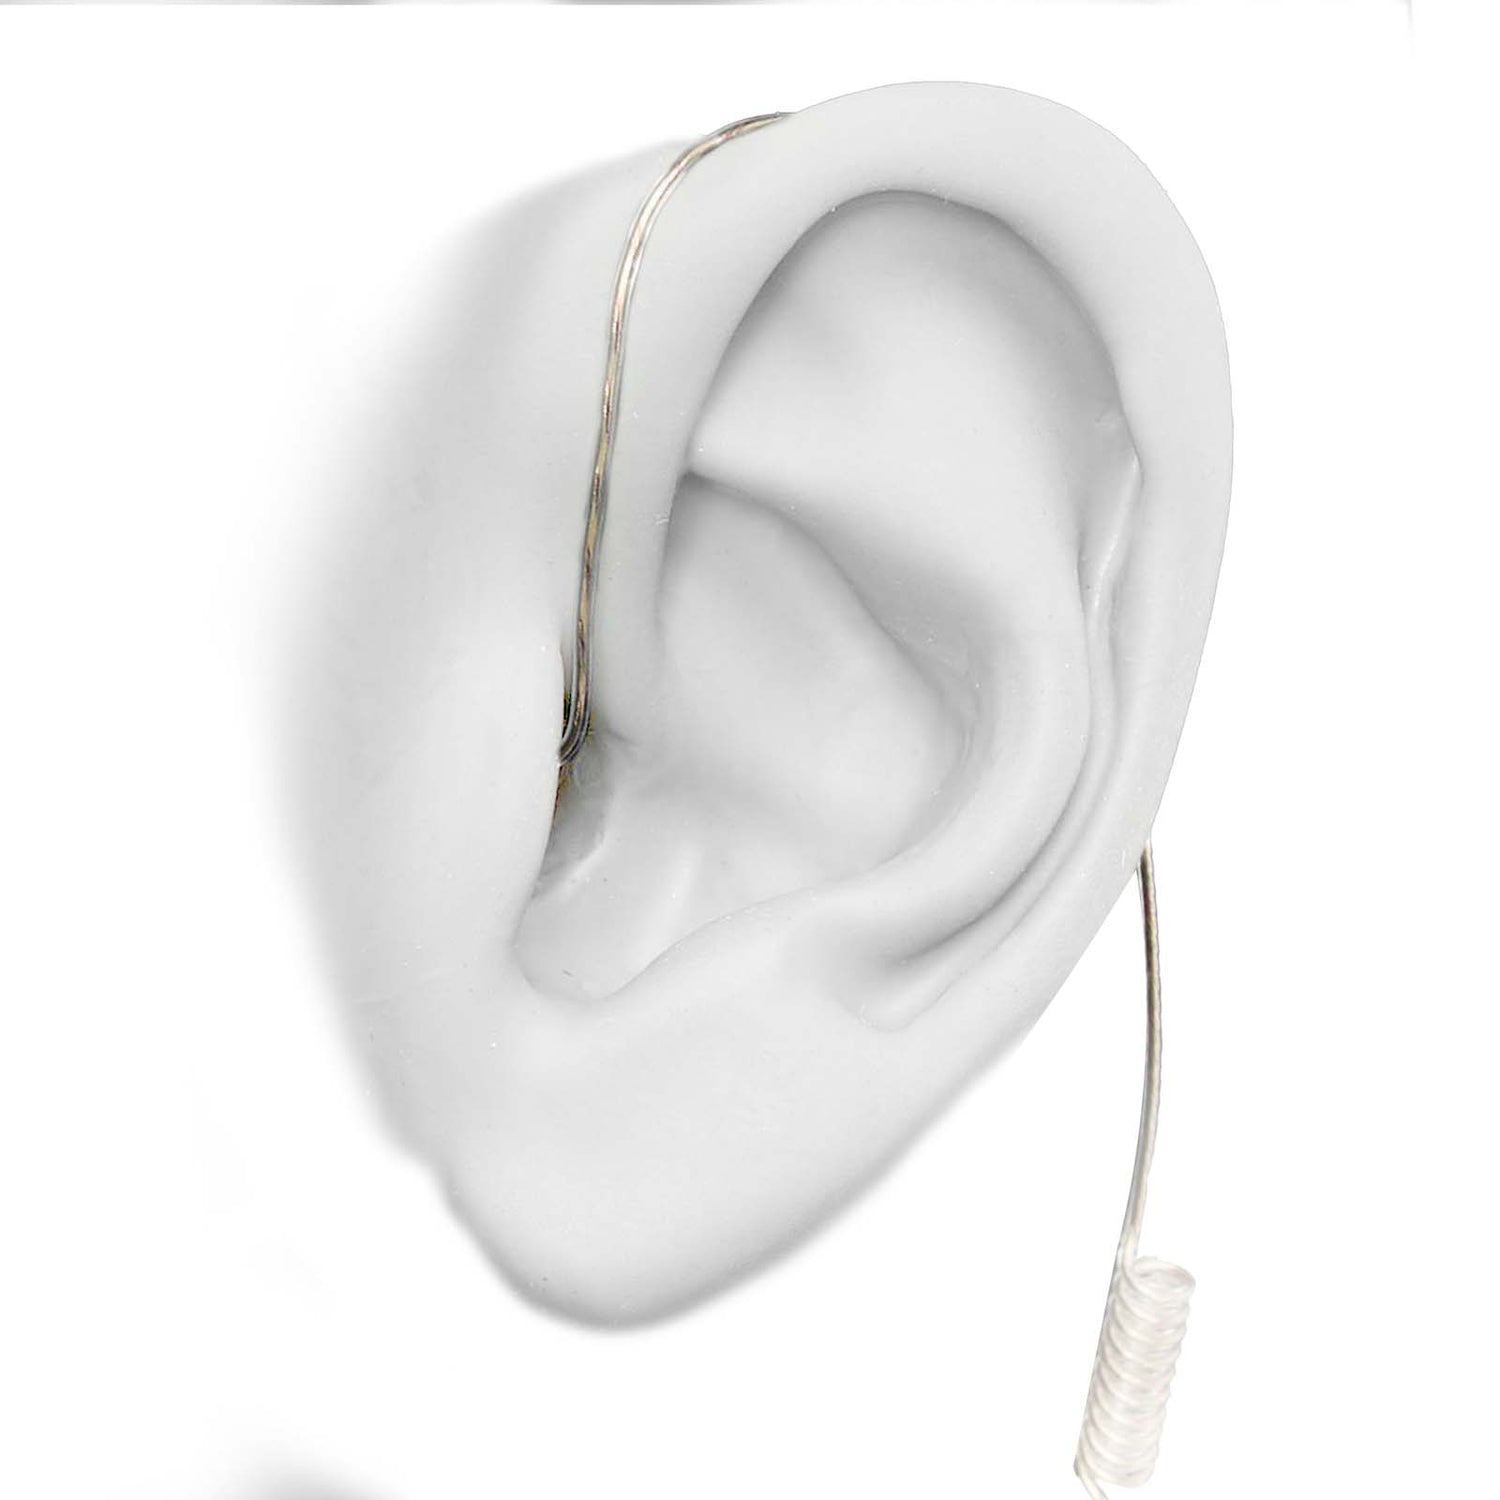 N-ear: 360 Flexo Dynamic™ Snaplock Earpiece